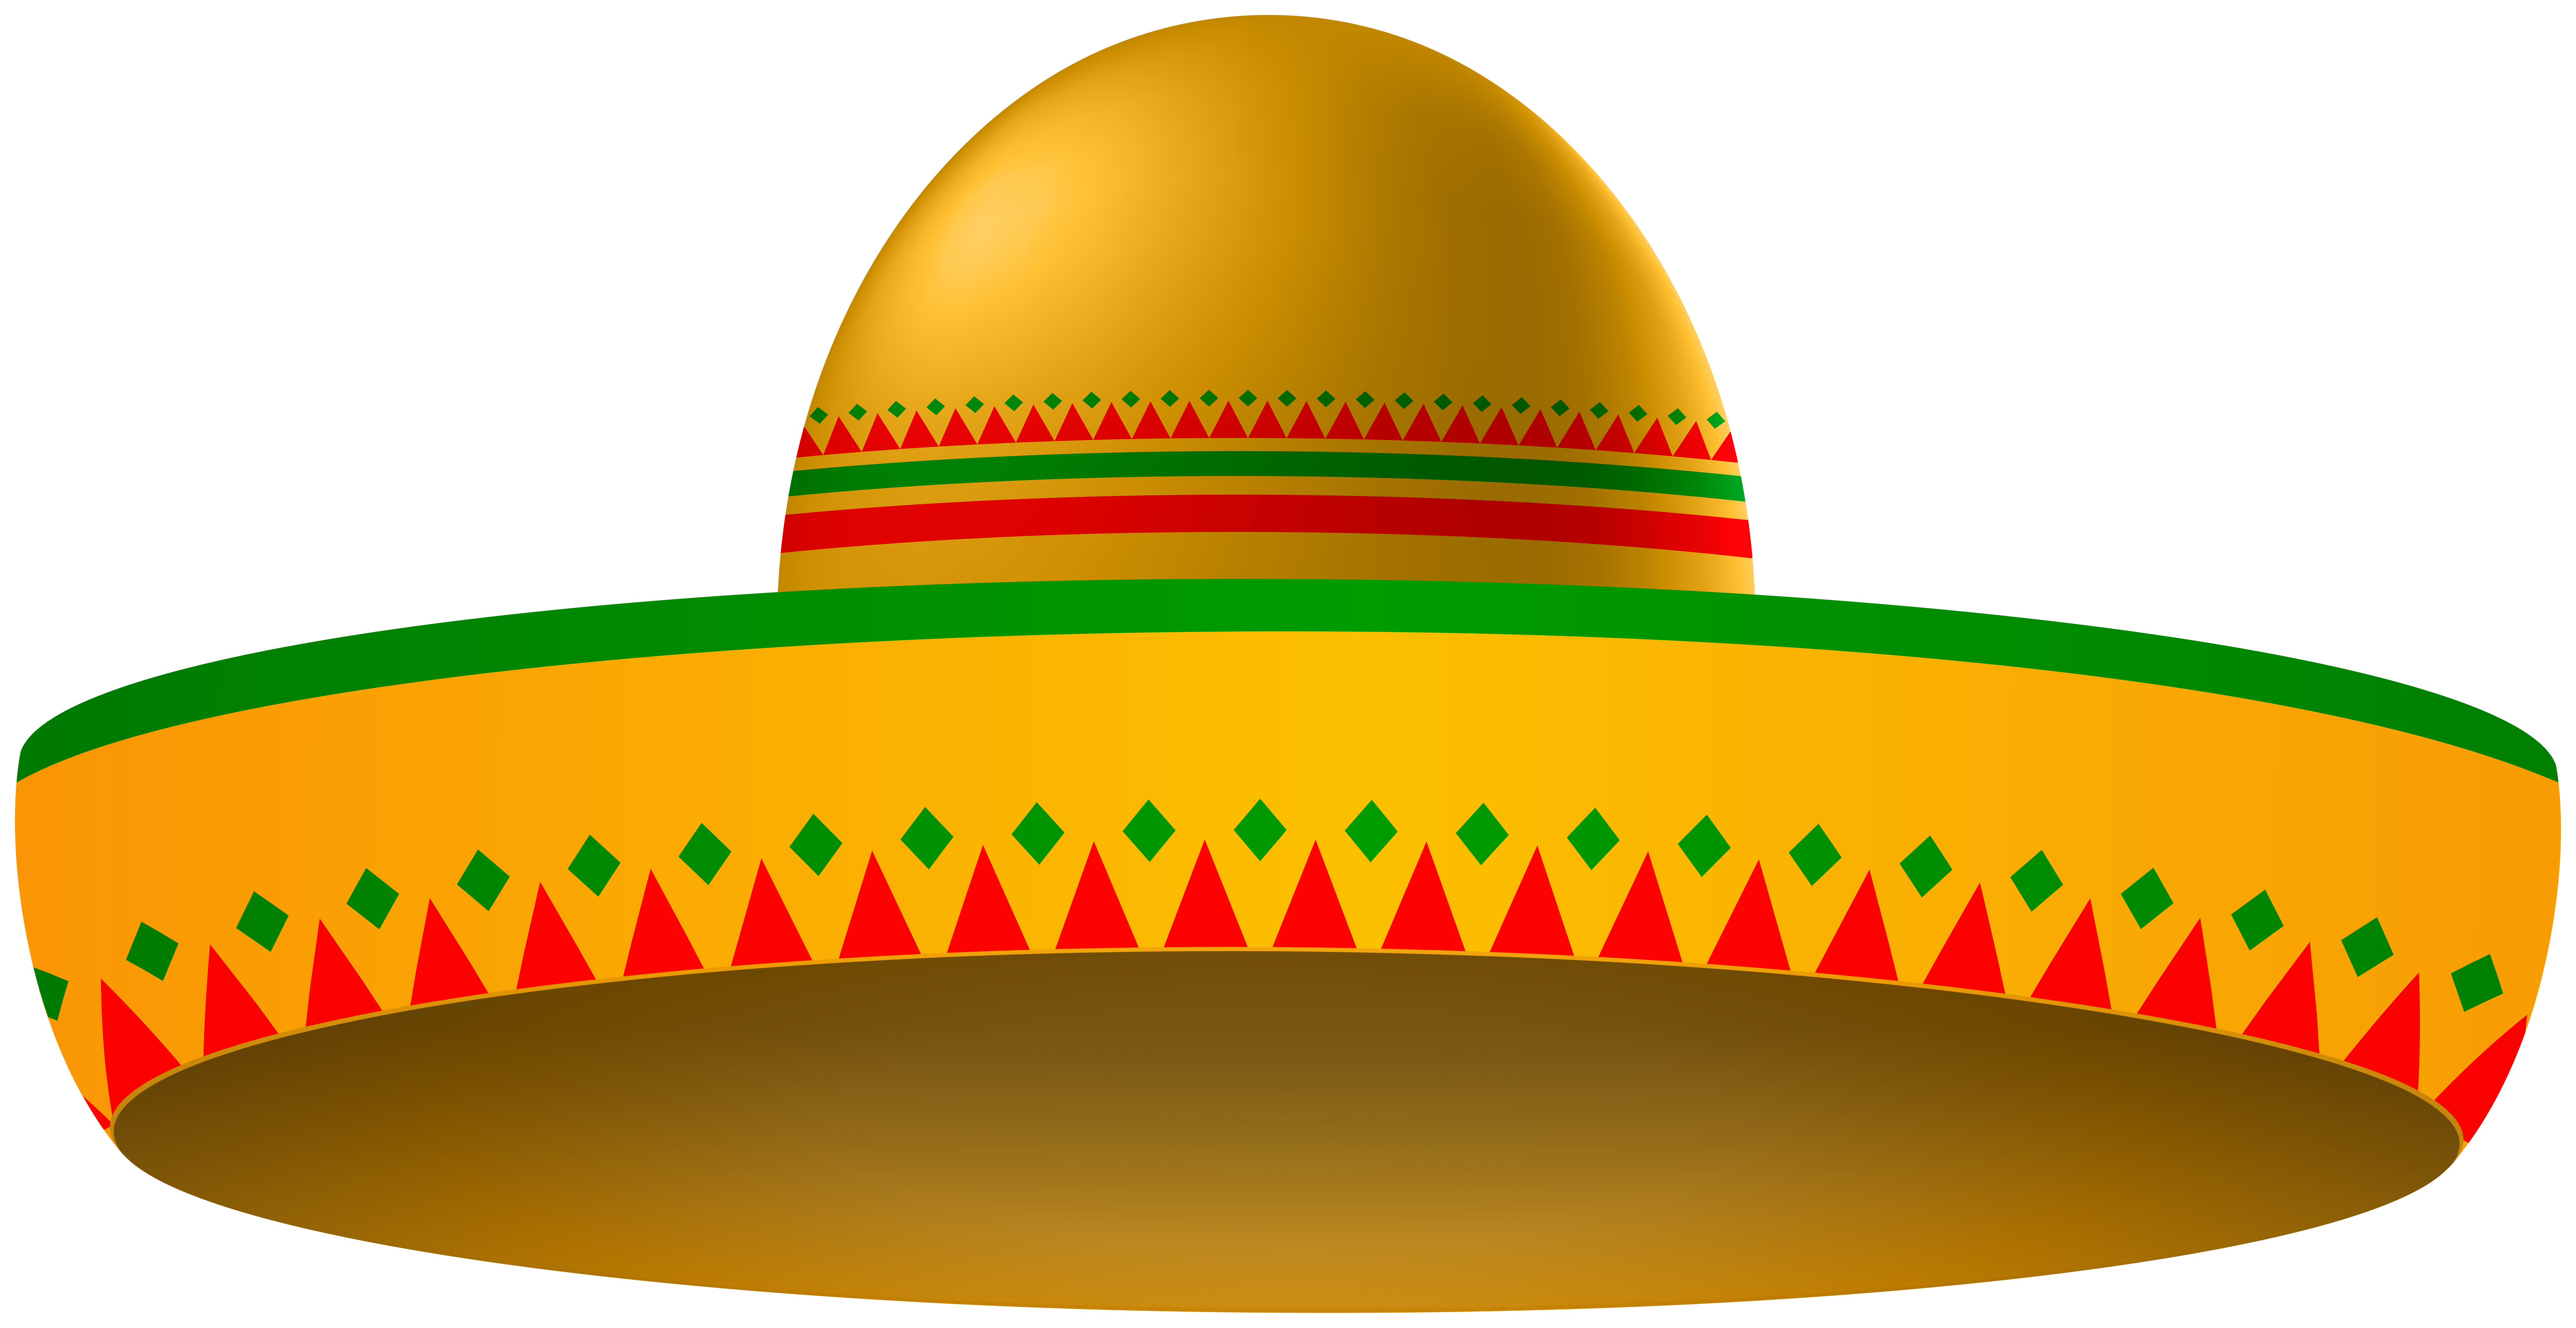 mexican sombrero hat